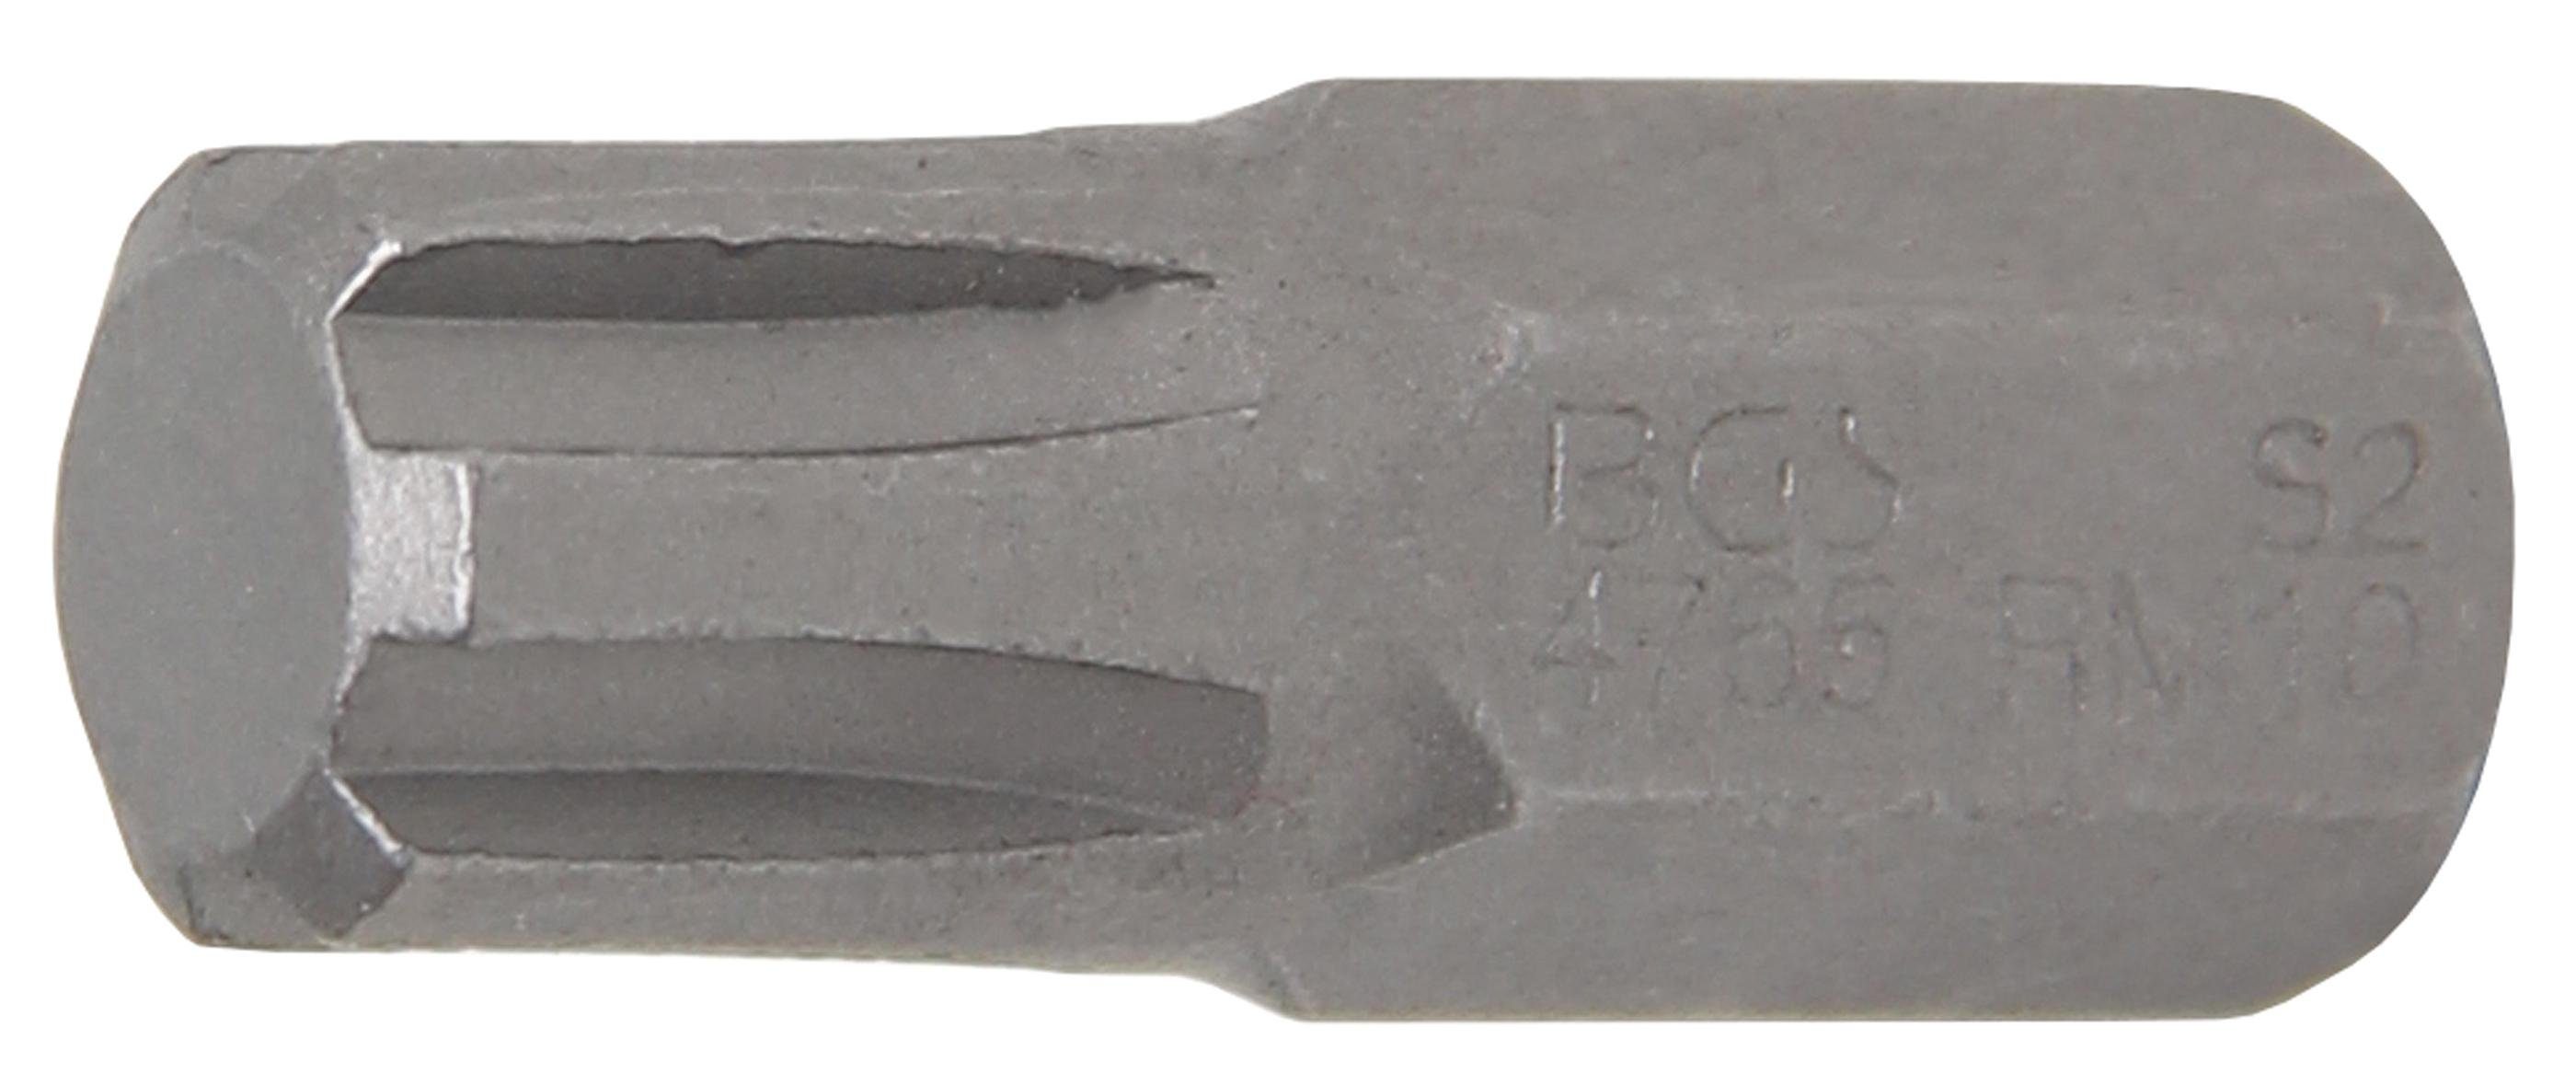 M10 Außensechskant (für (3/8), mm 10 Antrieb Bit, BGS RIBE) Keil-Profil Bit-Schraubendreher technic